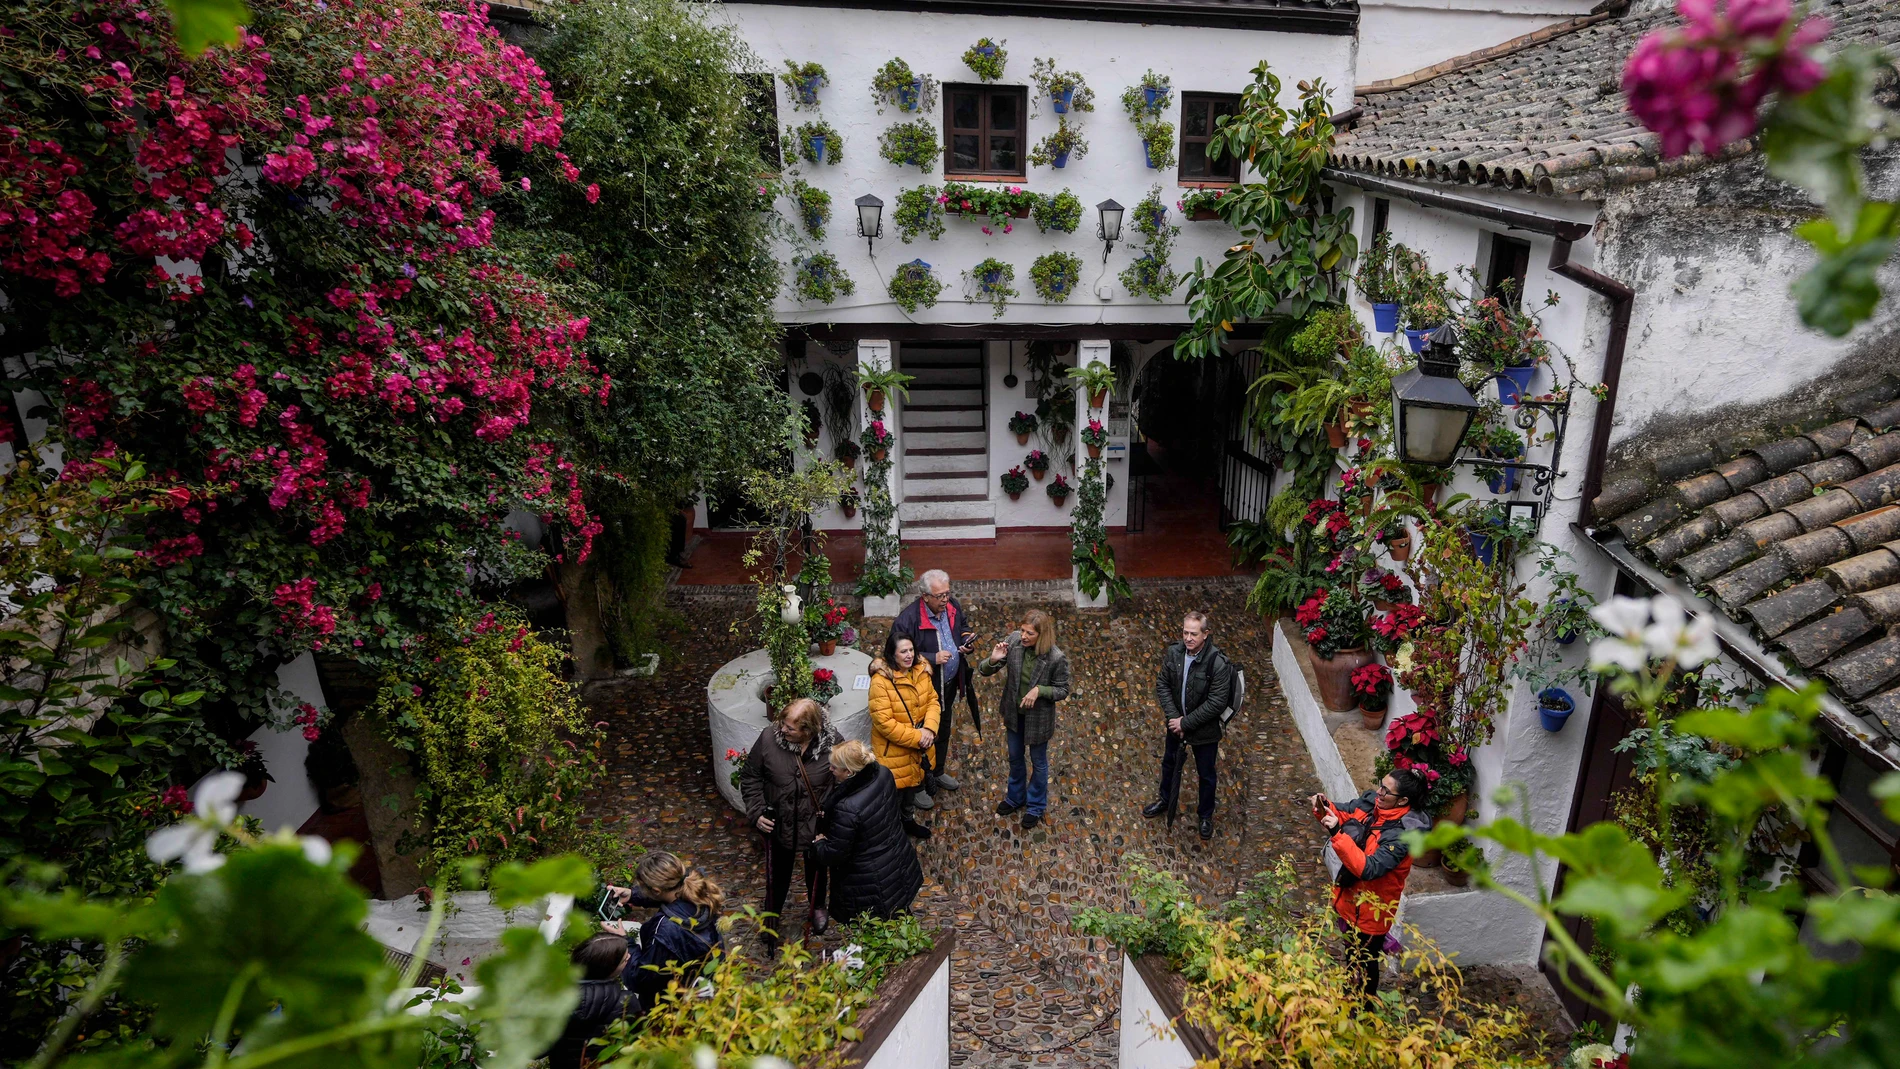 Vista de la entrada del patio de San Basilio este martes en Córdoba, que celebra el décimo aniversario de la declaración de los Patios Cordobeses como Patrimonio Cultural Inmaterial de la Humanidad por parte de la Unesco. EFE/ Rafa Alcaide